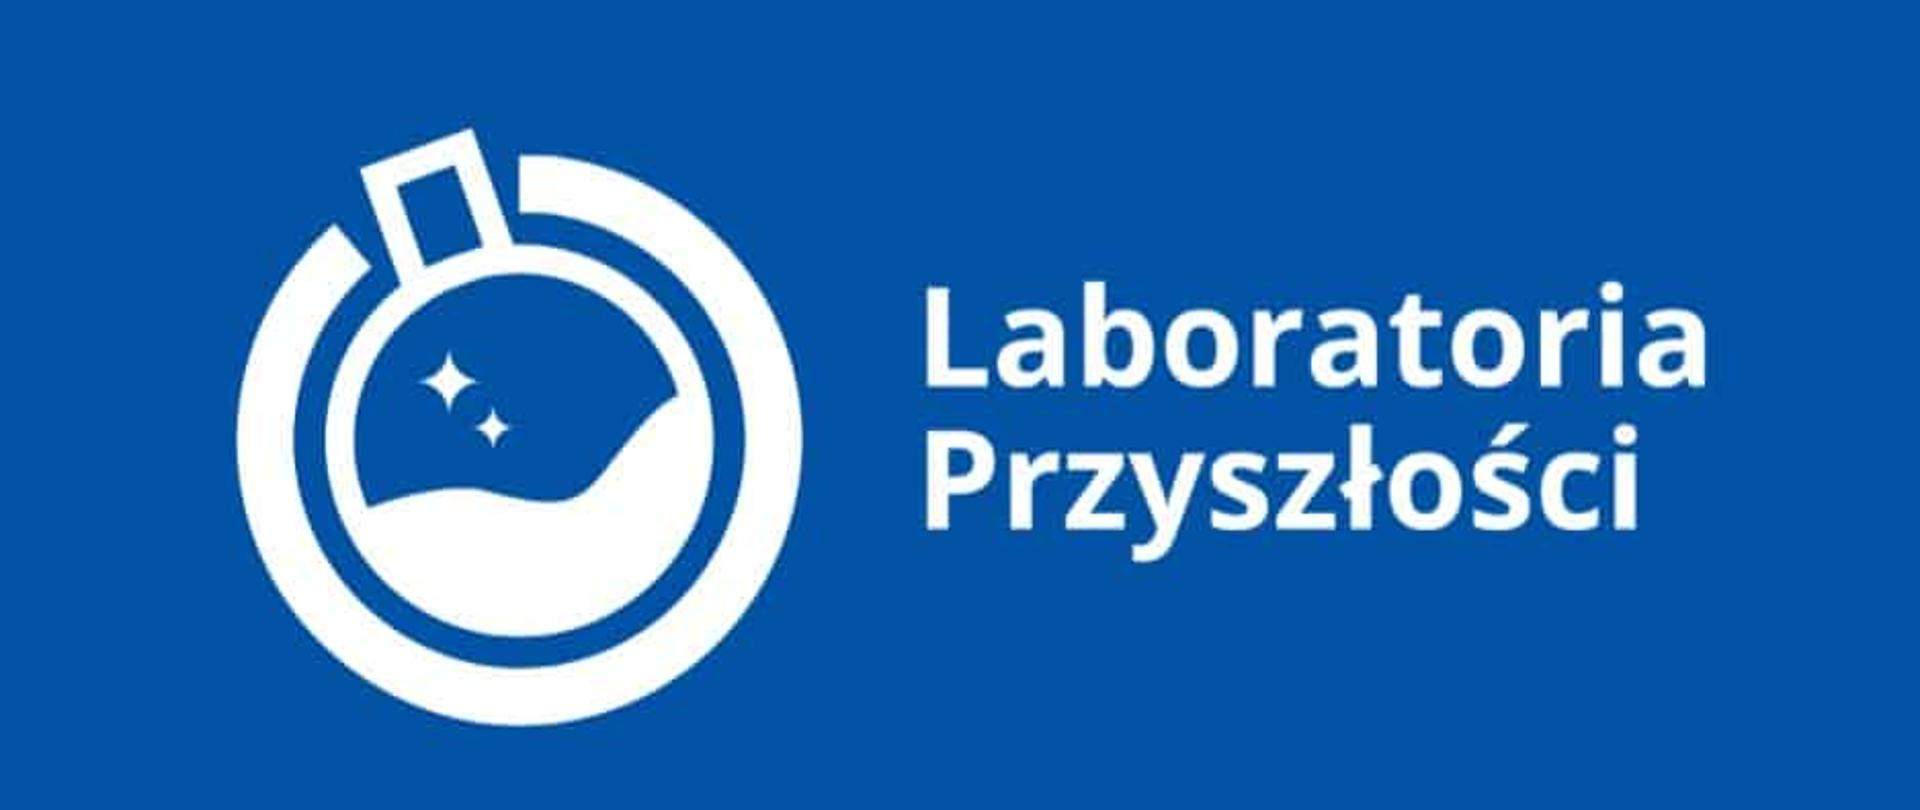 Laboratoria Przyszłości  – największe w historii wsparcie dla  wszystkich szkół podstawowych w Polsce!